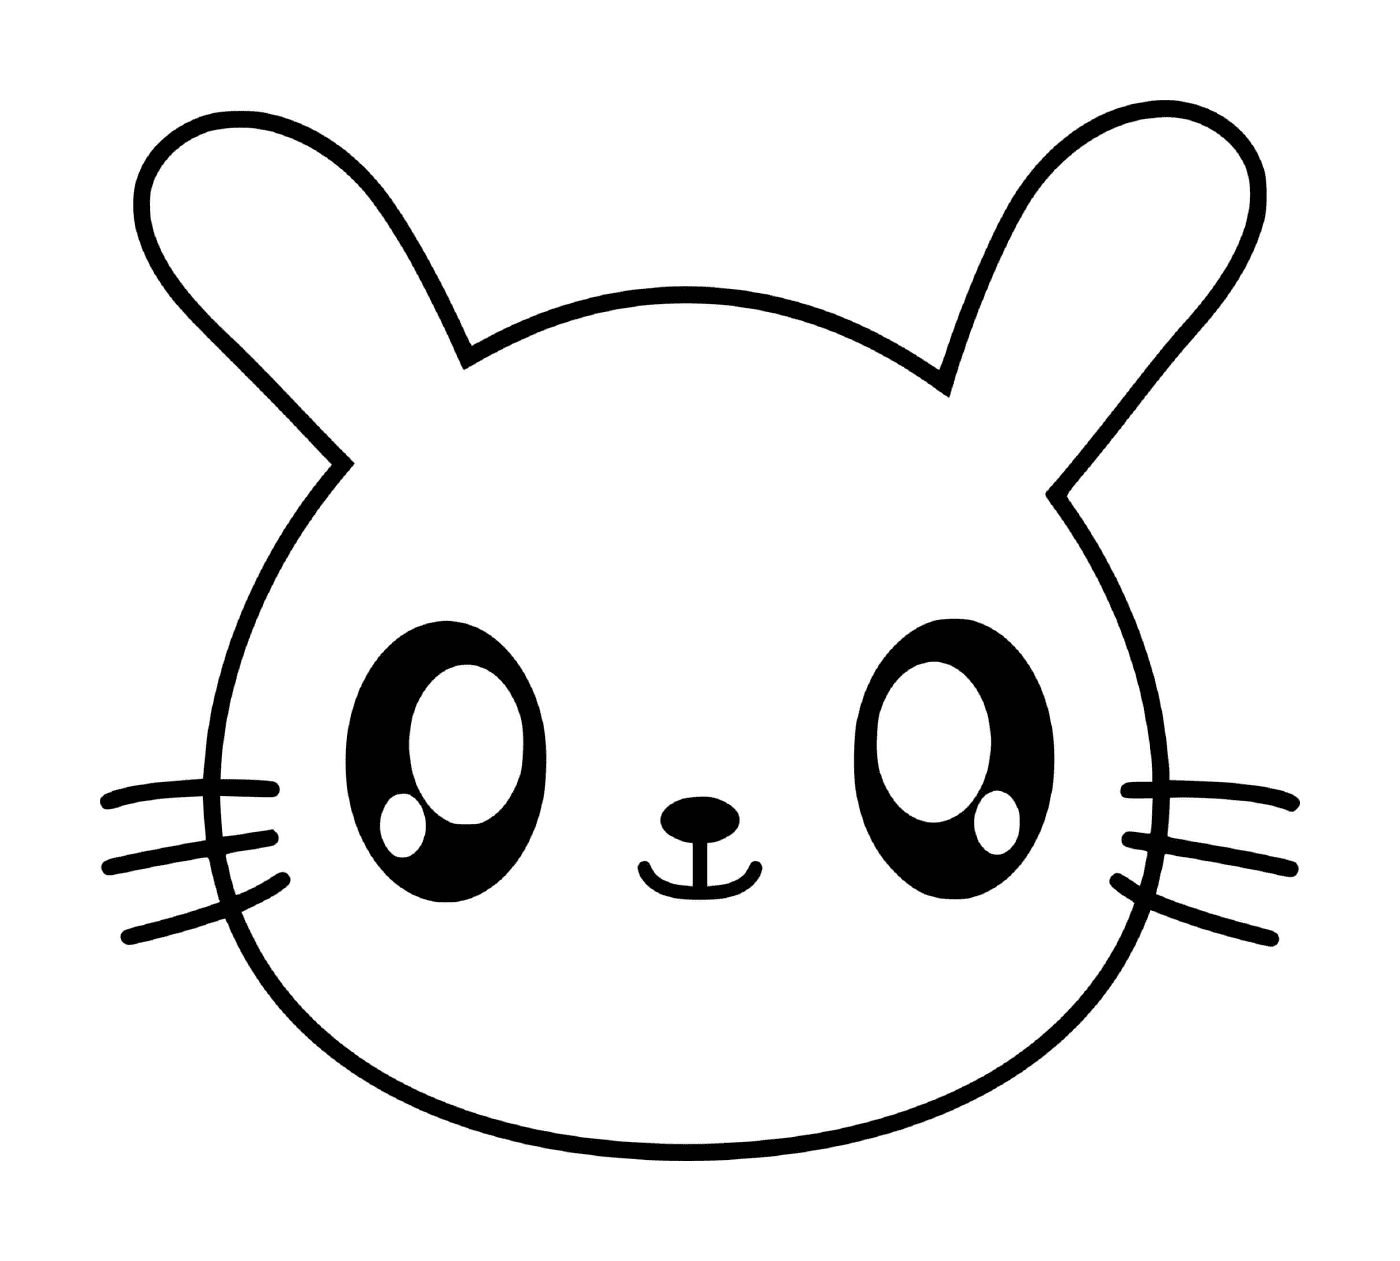  Rabbit kawaii with big eyes 